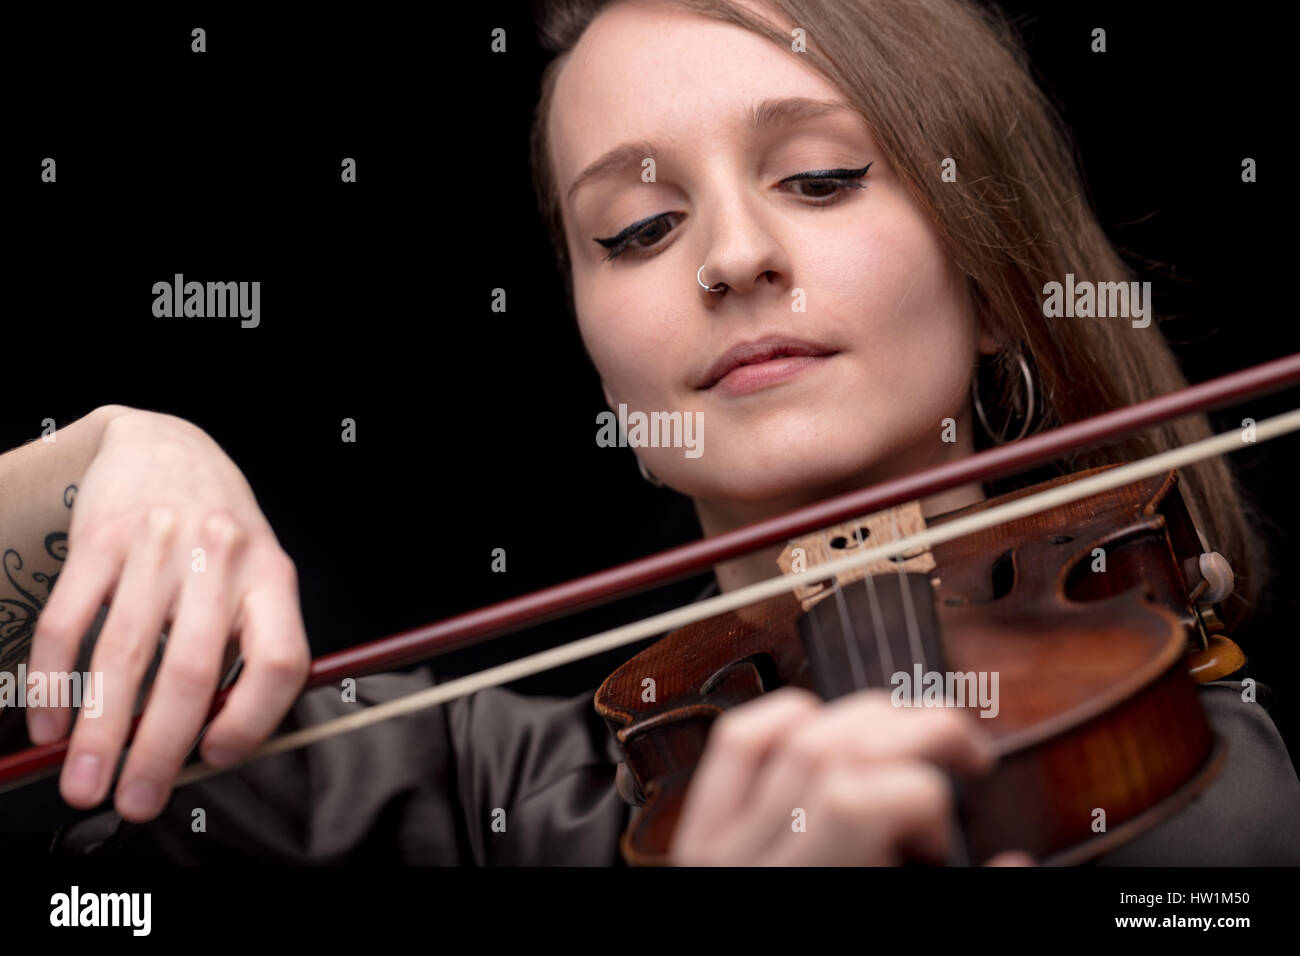 Jeune femme belle violoniste joueur de jouer son instrument sur son épaule holding arc. portrait dans une chambre noire floue en arrière-plan. Concept de c Banque D'Images